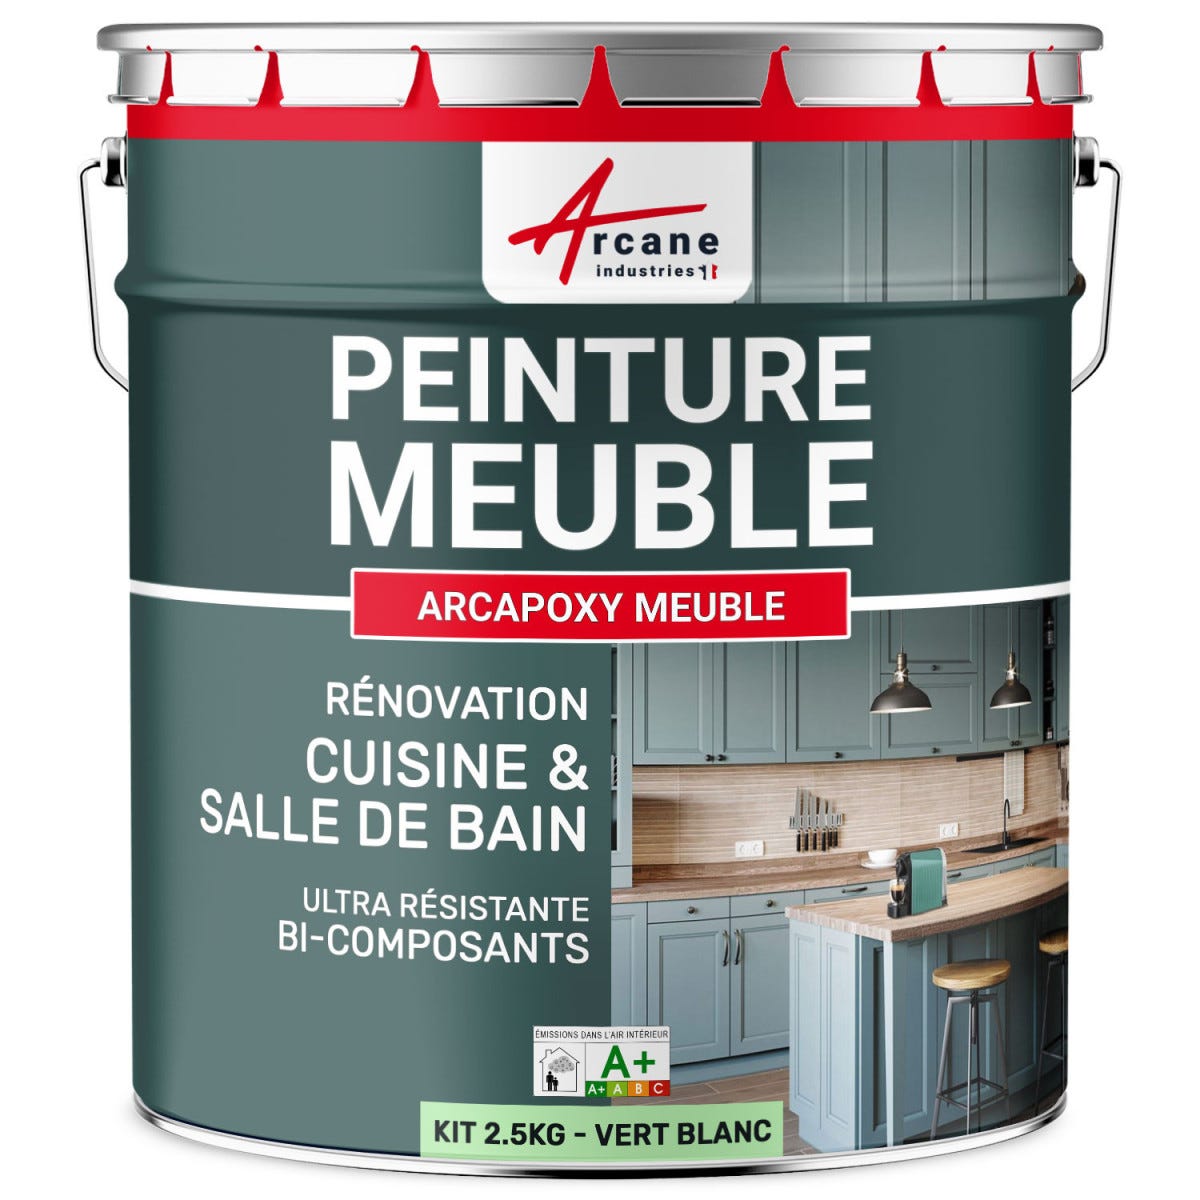 Peinture Meuble Cuisine, Salle de Bain - Résine ARCAPOXY MEUBLE - 2.5 kg (jusqu'à 30 m² en 2 couches) - Vert Blanc - RAL 6019 - ARCANE INDUSTRIES 5